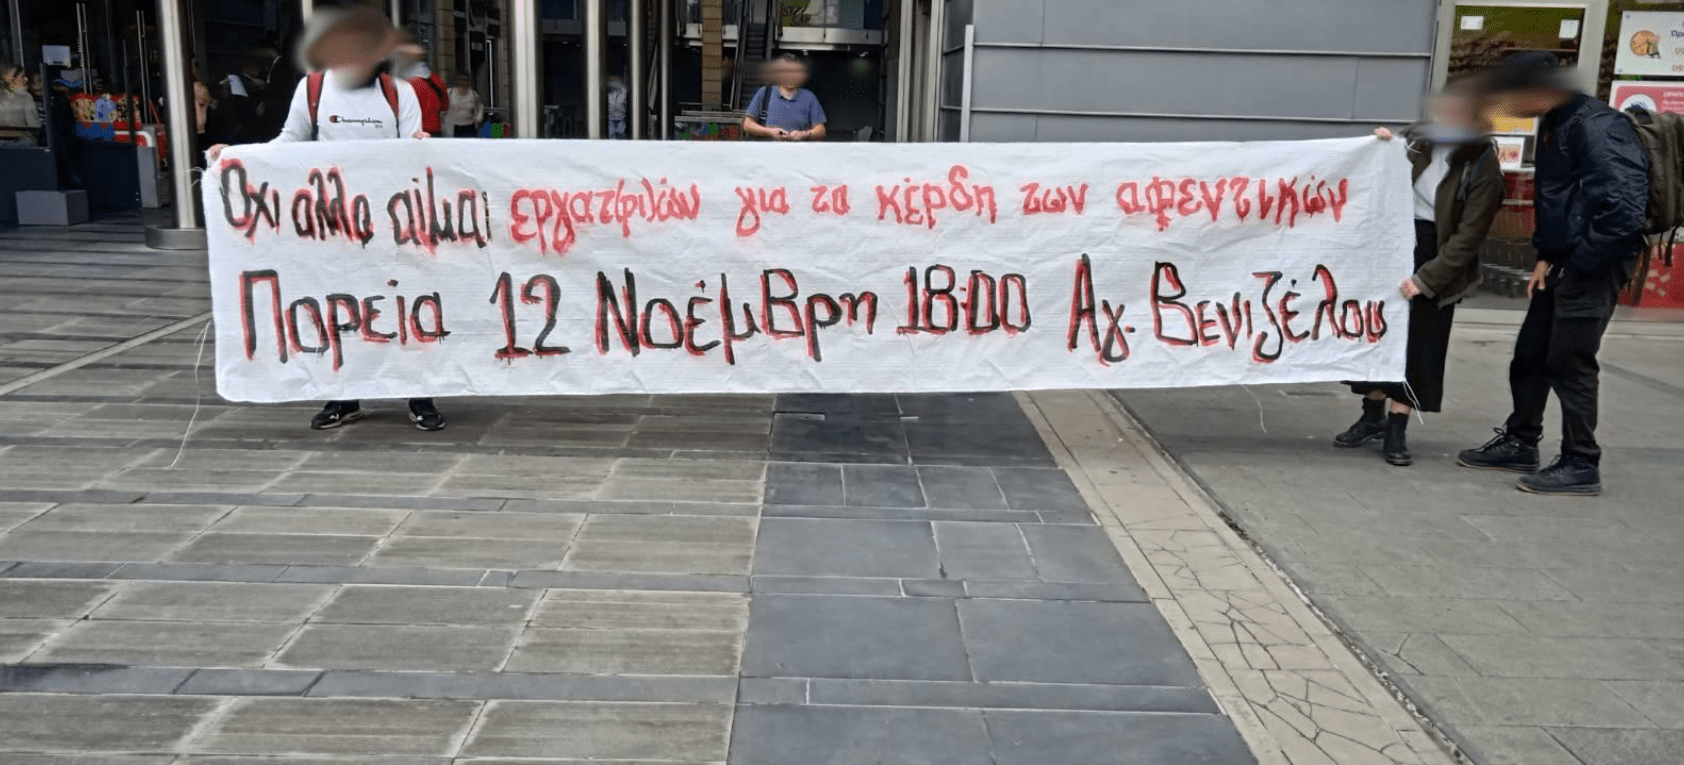 Θεσσαλονίκη | Παρέμβαση στα γραφεία της Cosco και κάλεσμα σε πορεία στις 12/11